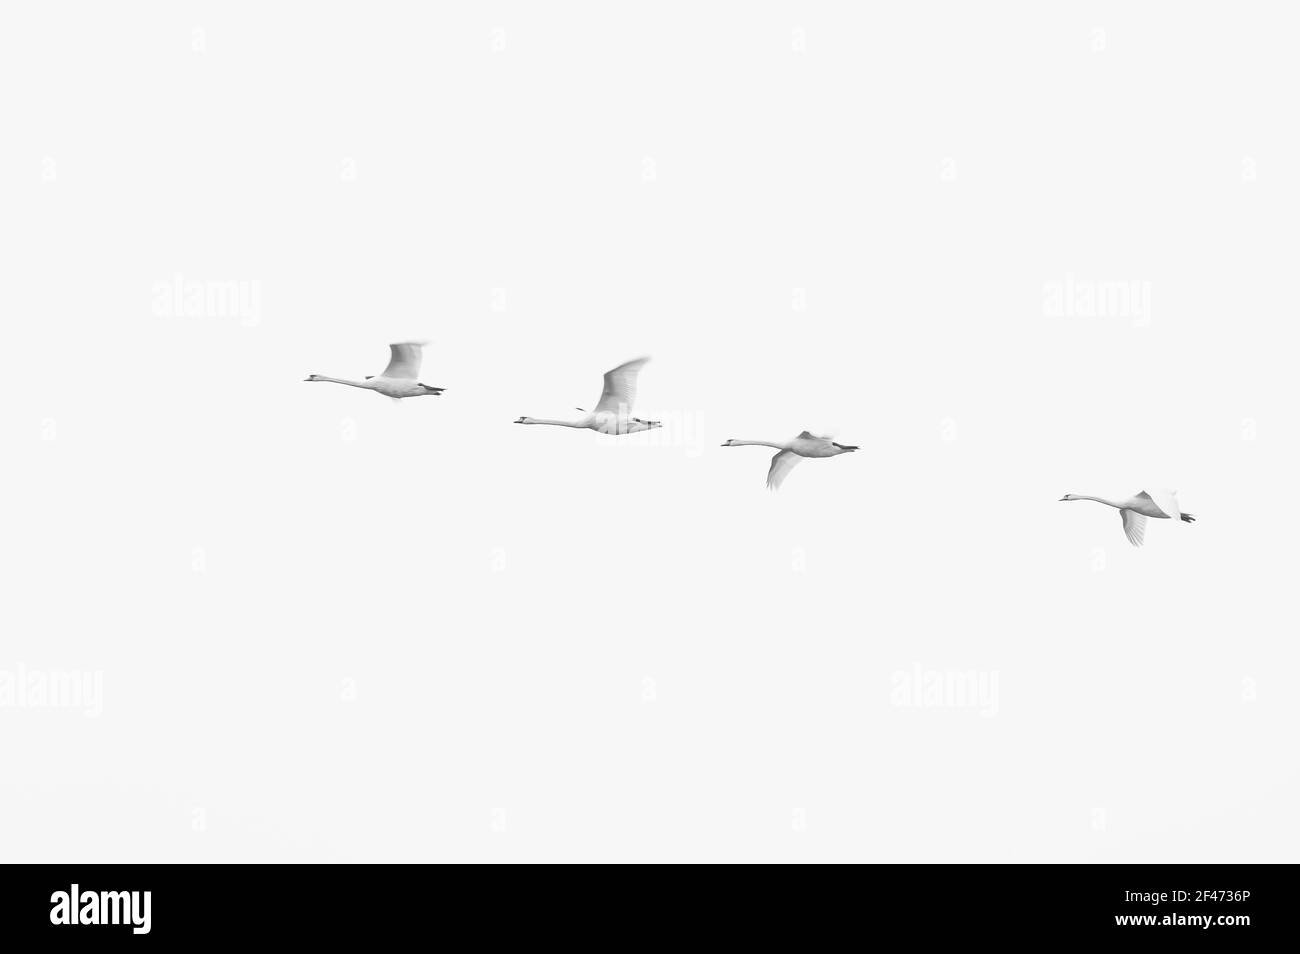 Un colpo in scala di grigi di un gregge di uccelli che volano dentro un cielo Foto Stock